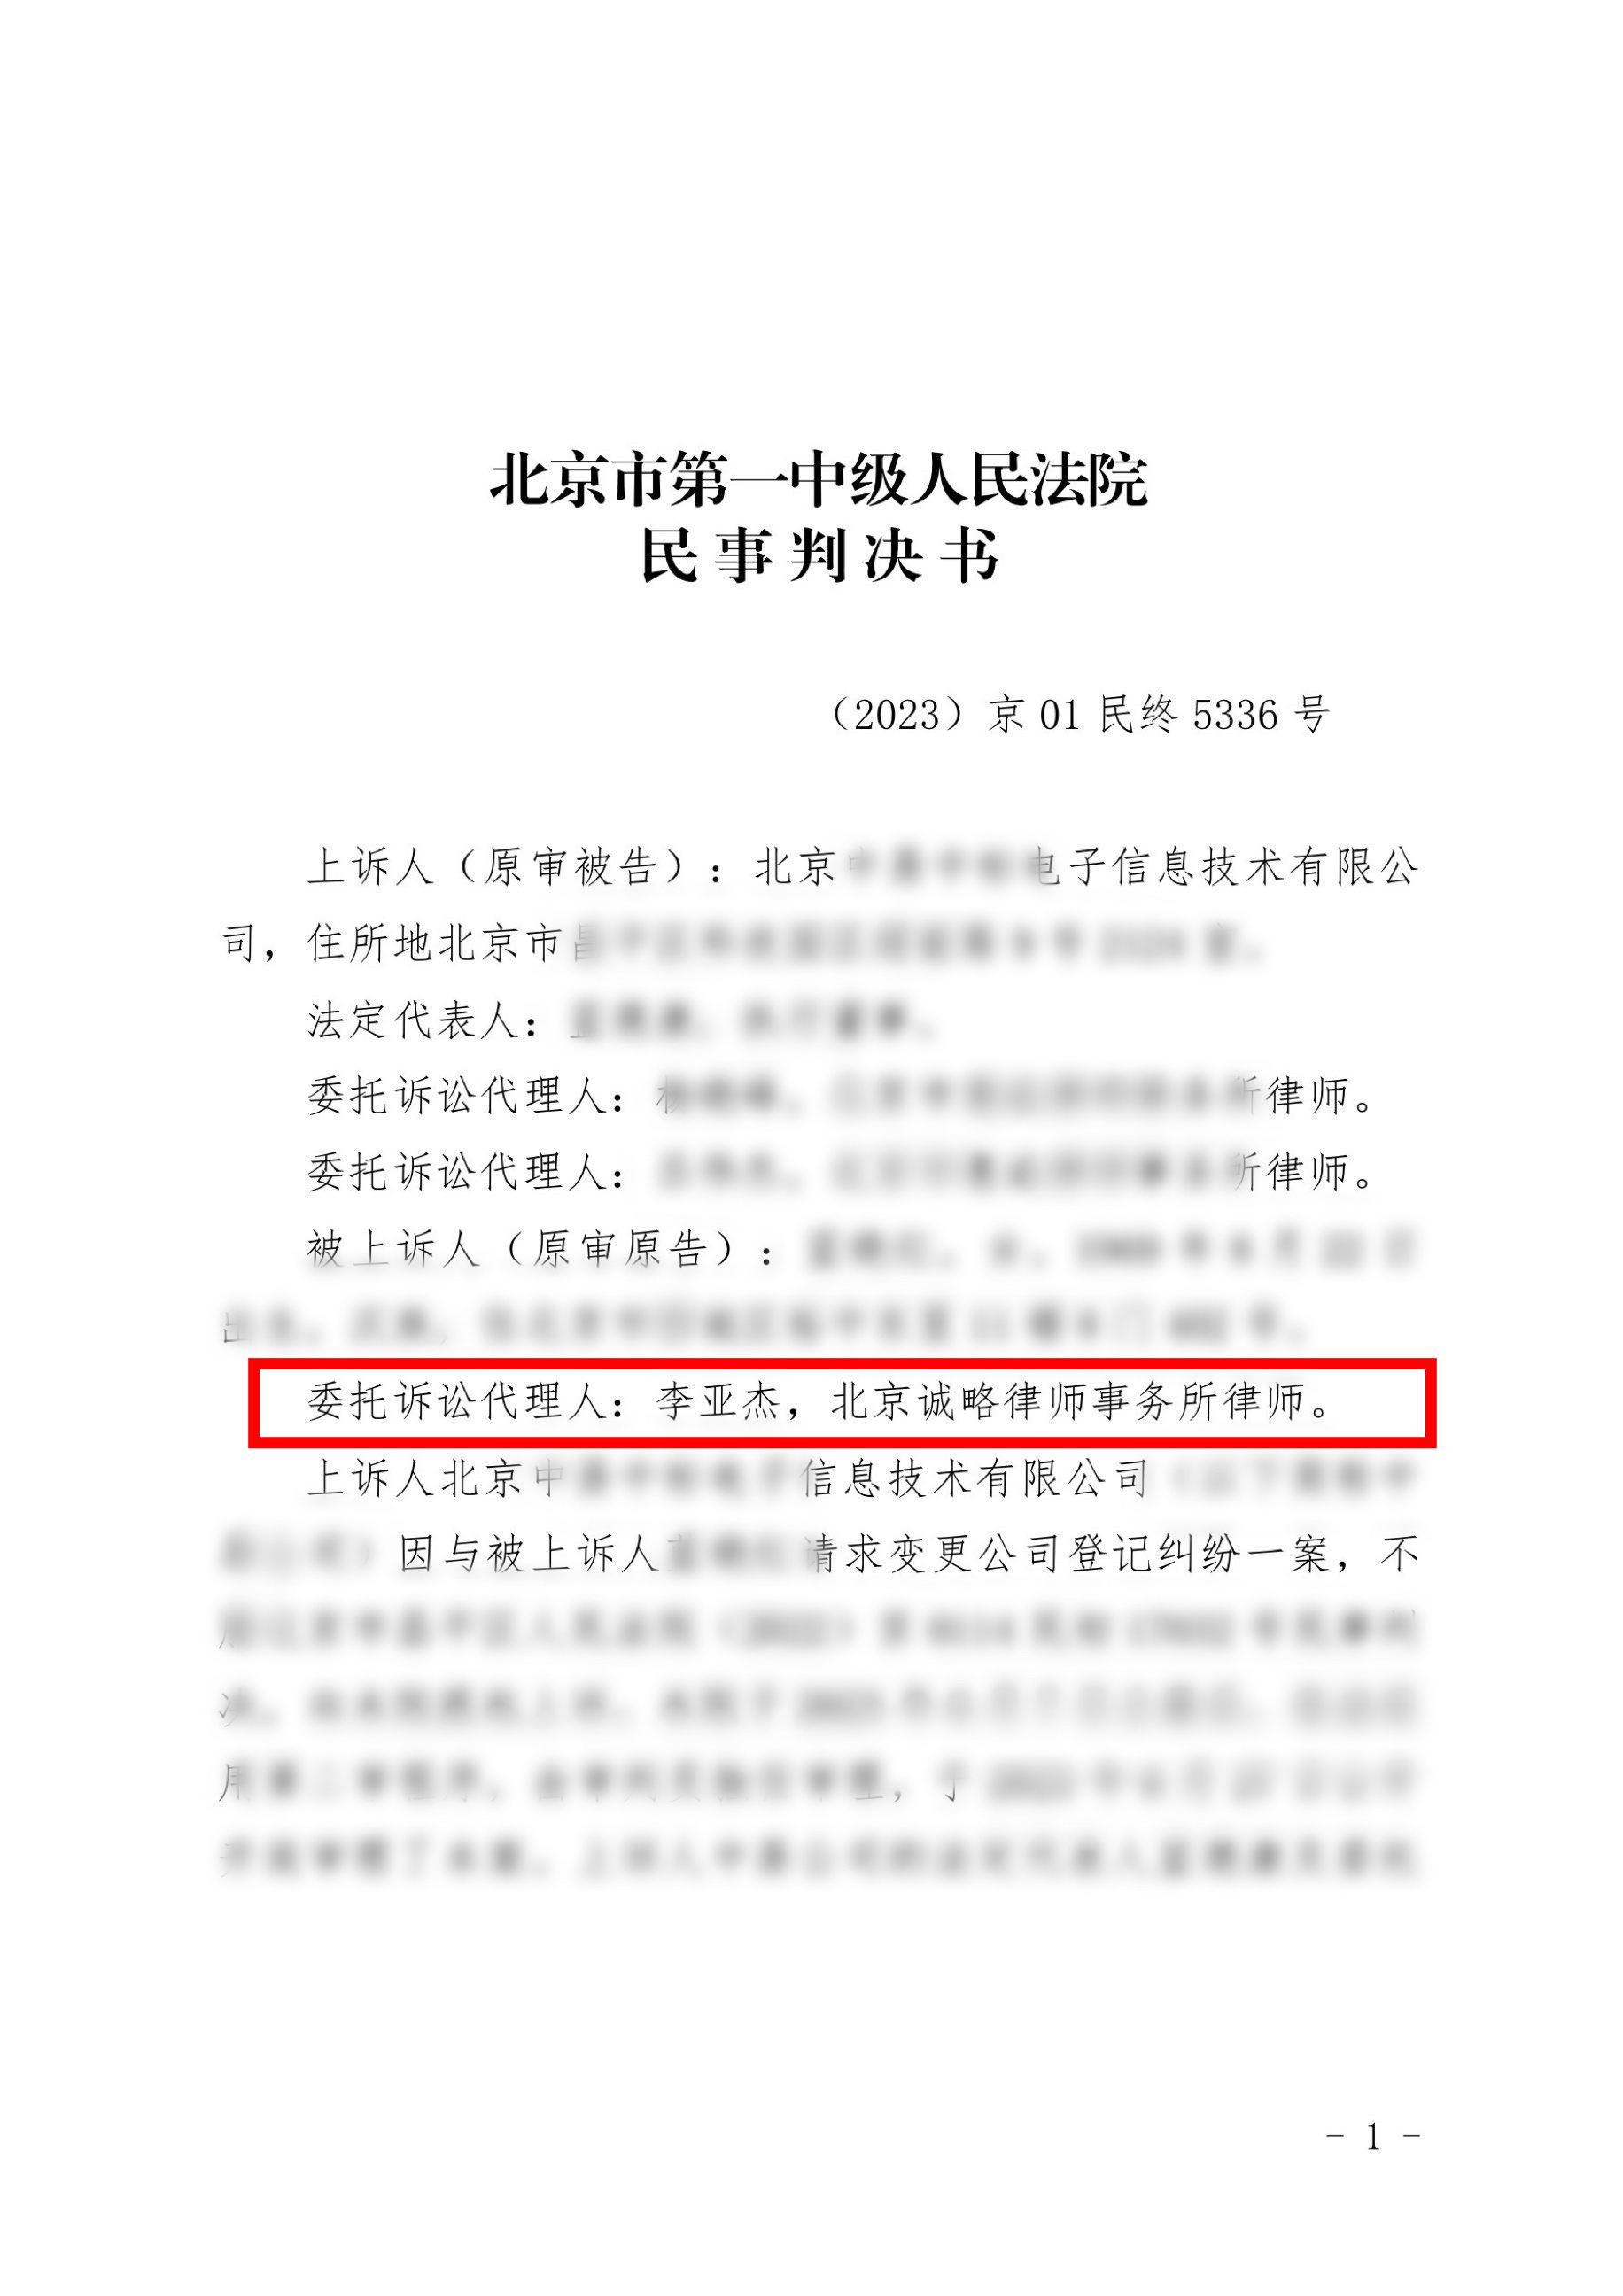 【北京市】北京某电子信息技术有限公司与蓝女士请求变更公司登记纠纷一案